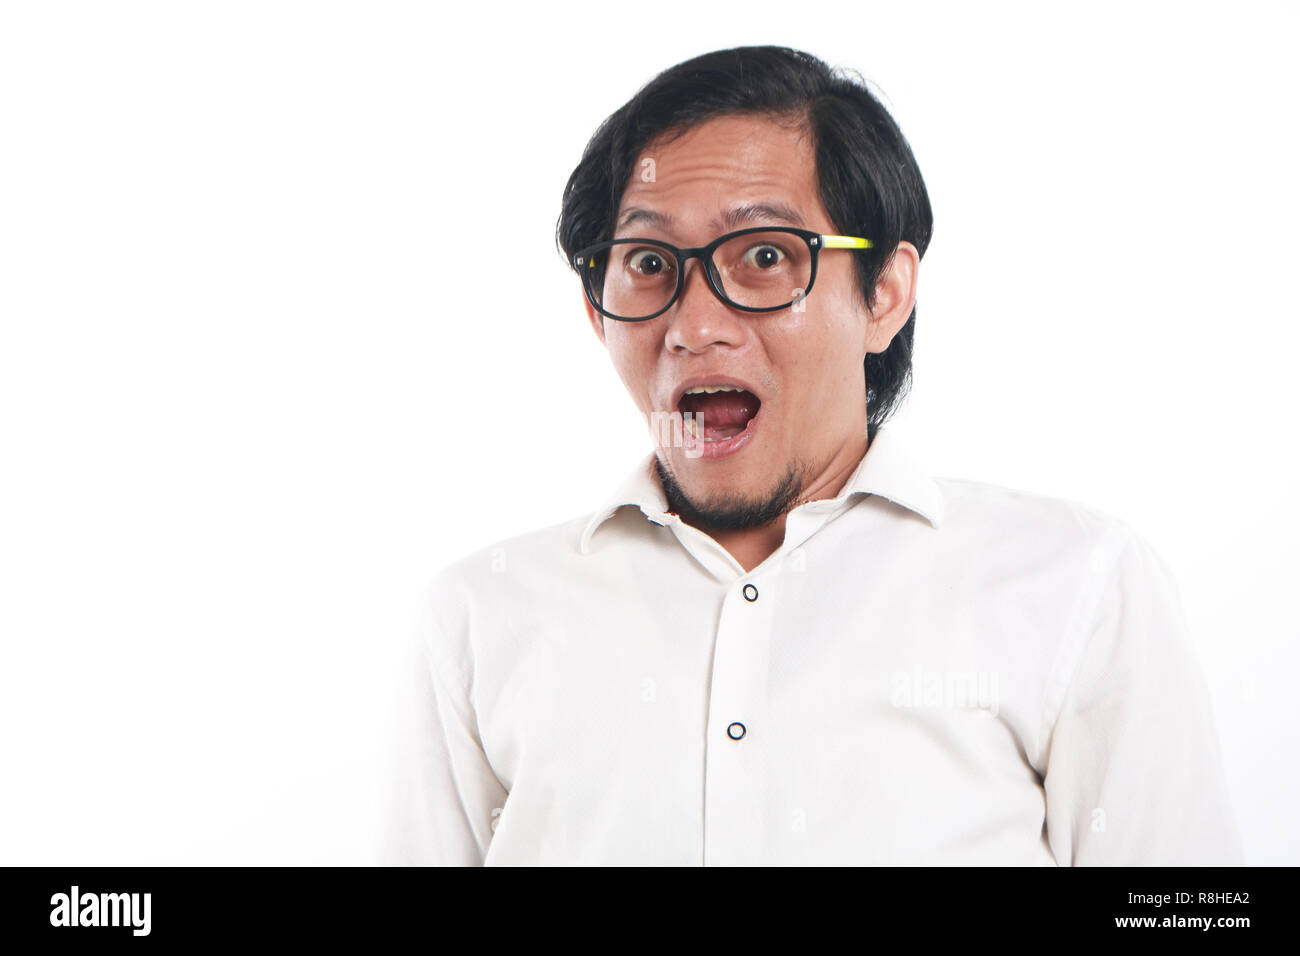 Foto immagine ritratto di un divertente giovane imprenditore asiatica con gli occhiali sembrava molto scioccato, close up ritratto con gesto sorpreso, su bianco backgro Foto Stock